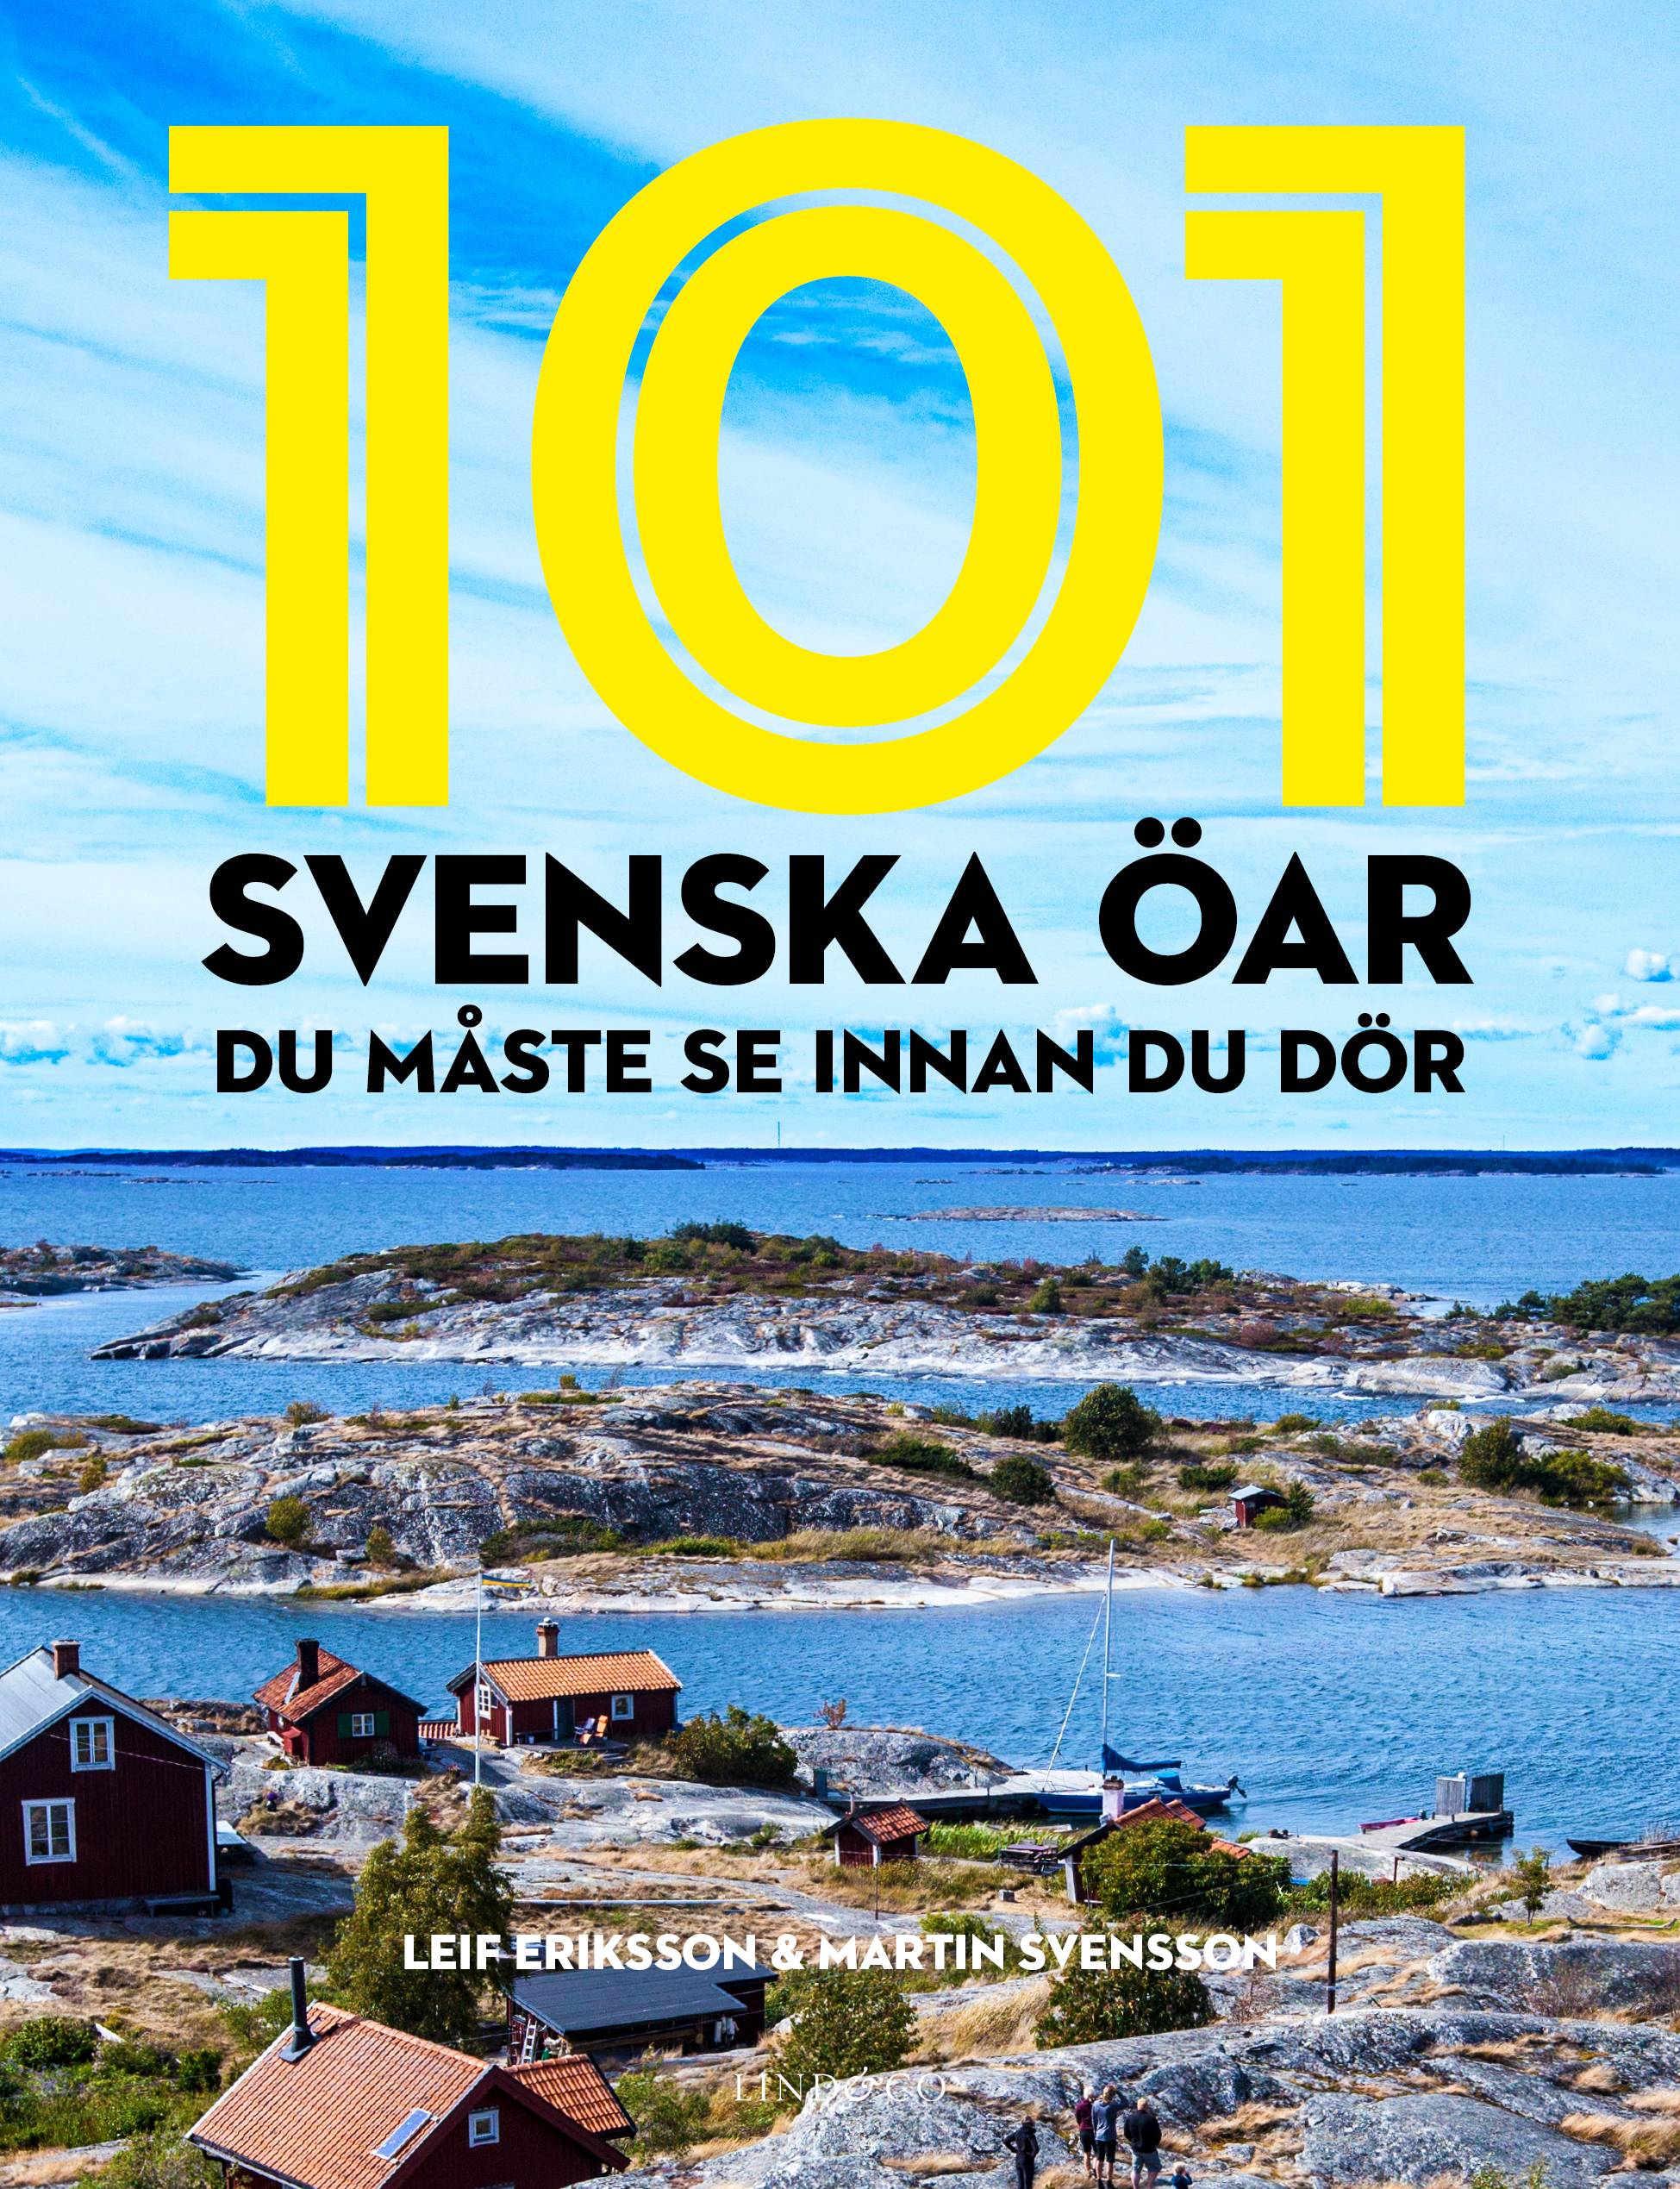 101 svenska öar du måste se innan du dör